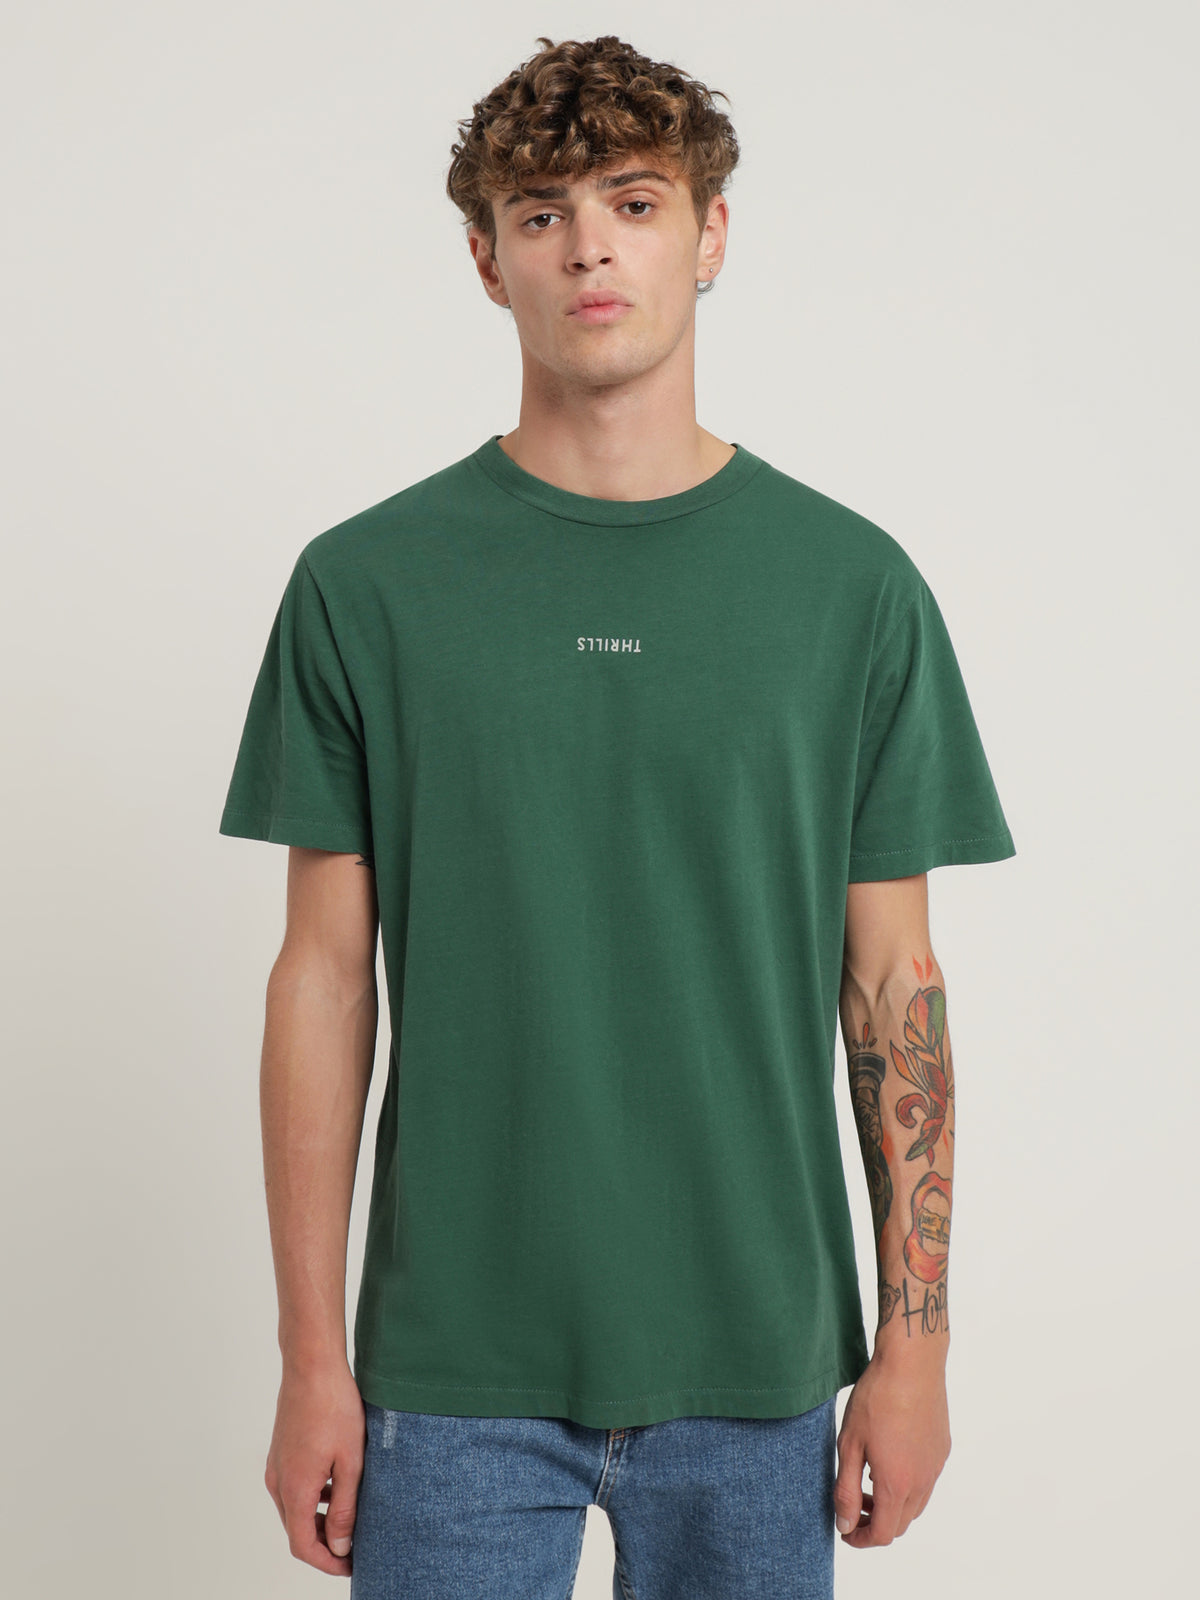 Minimal Thrills Merch Fit T-Shirt in Mallard Green